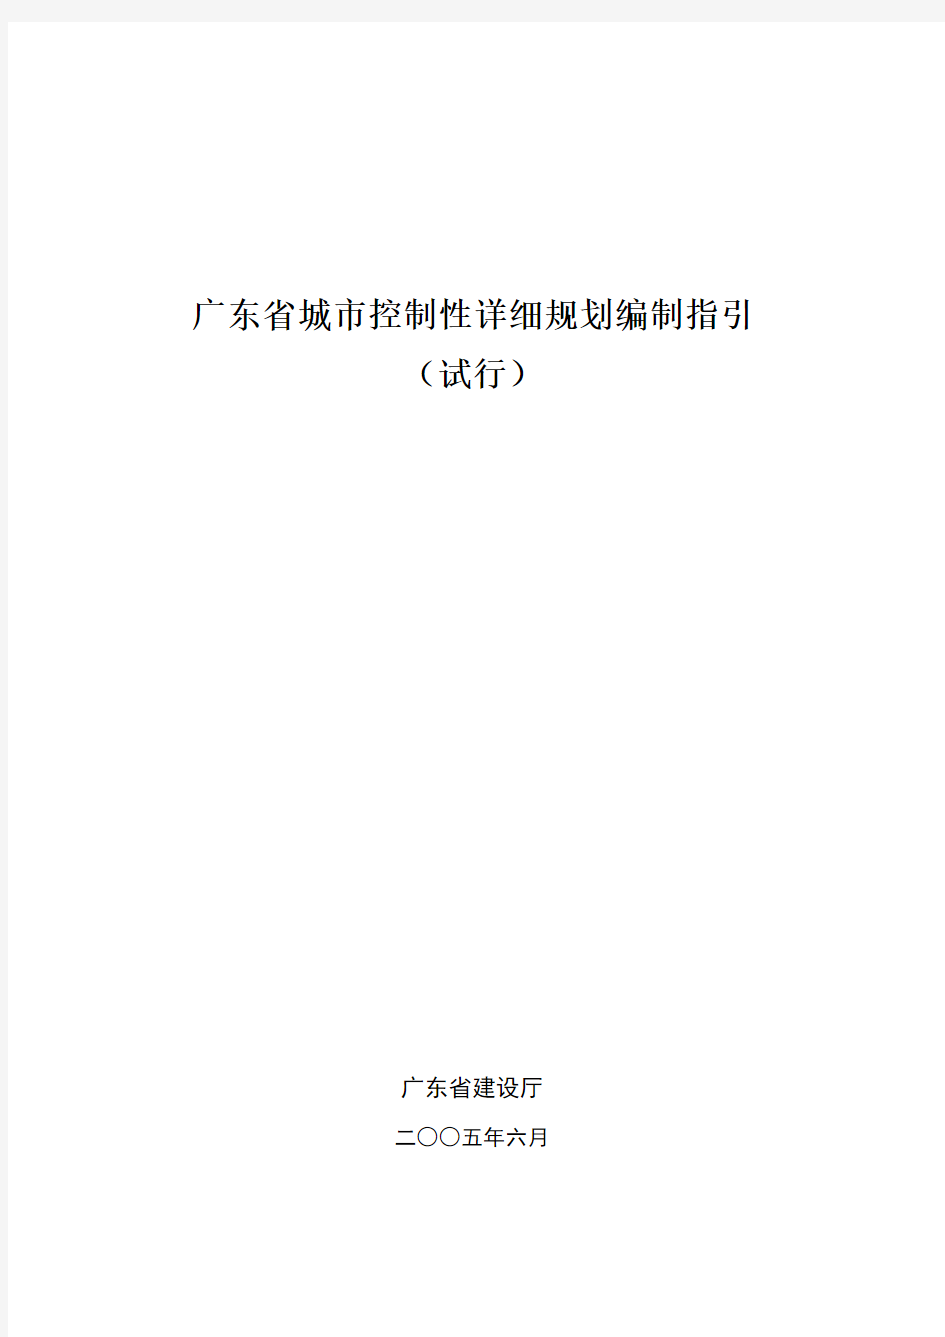 广东省城市控制性详细规划编制指引(正式试行稿 )050704